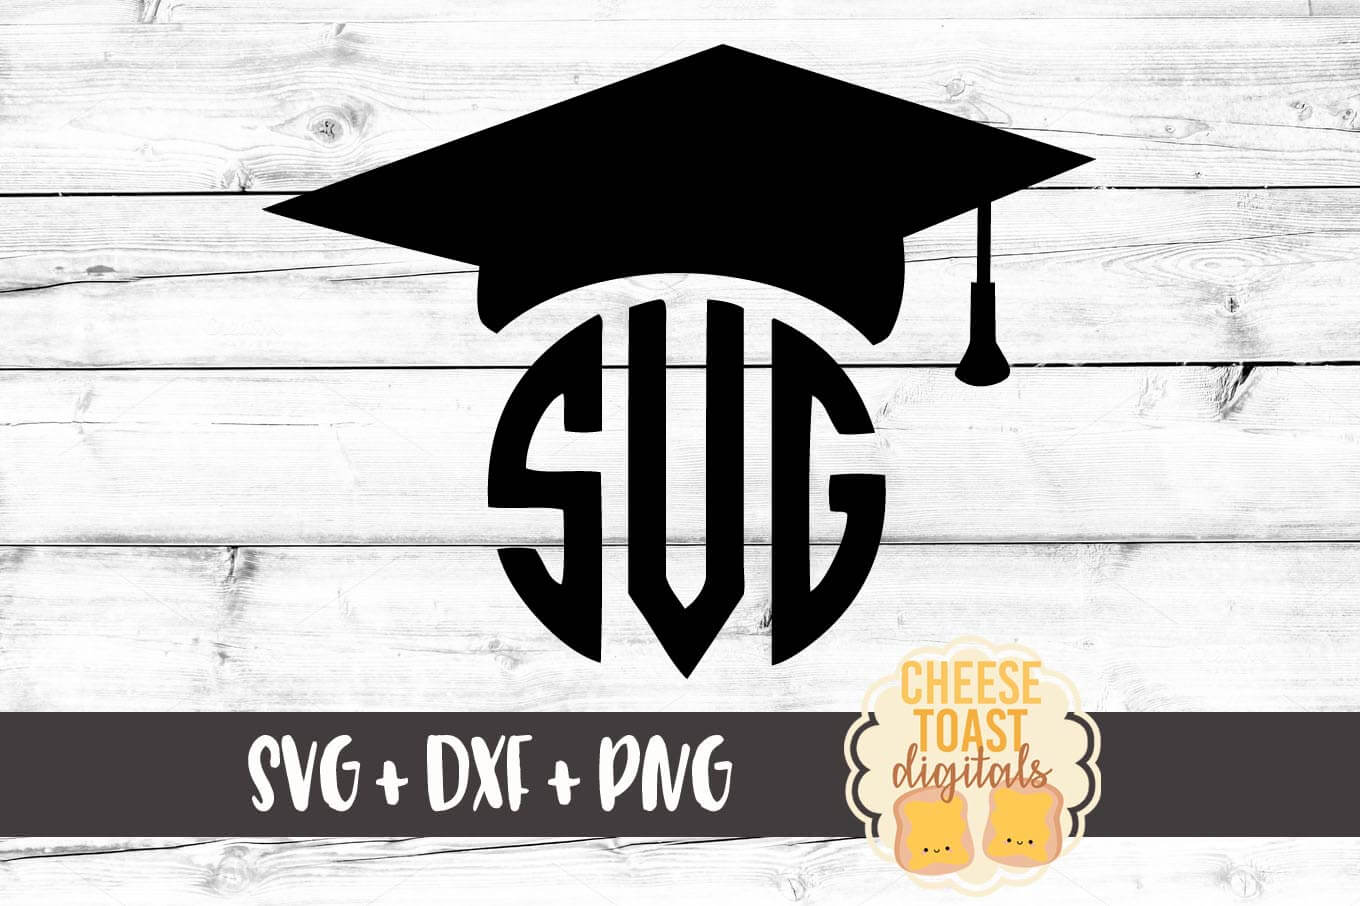 Graduation Cap Monogram SVG - Free and Premium SVG Files ...